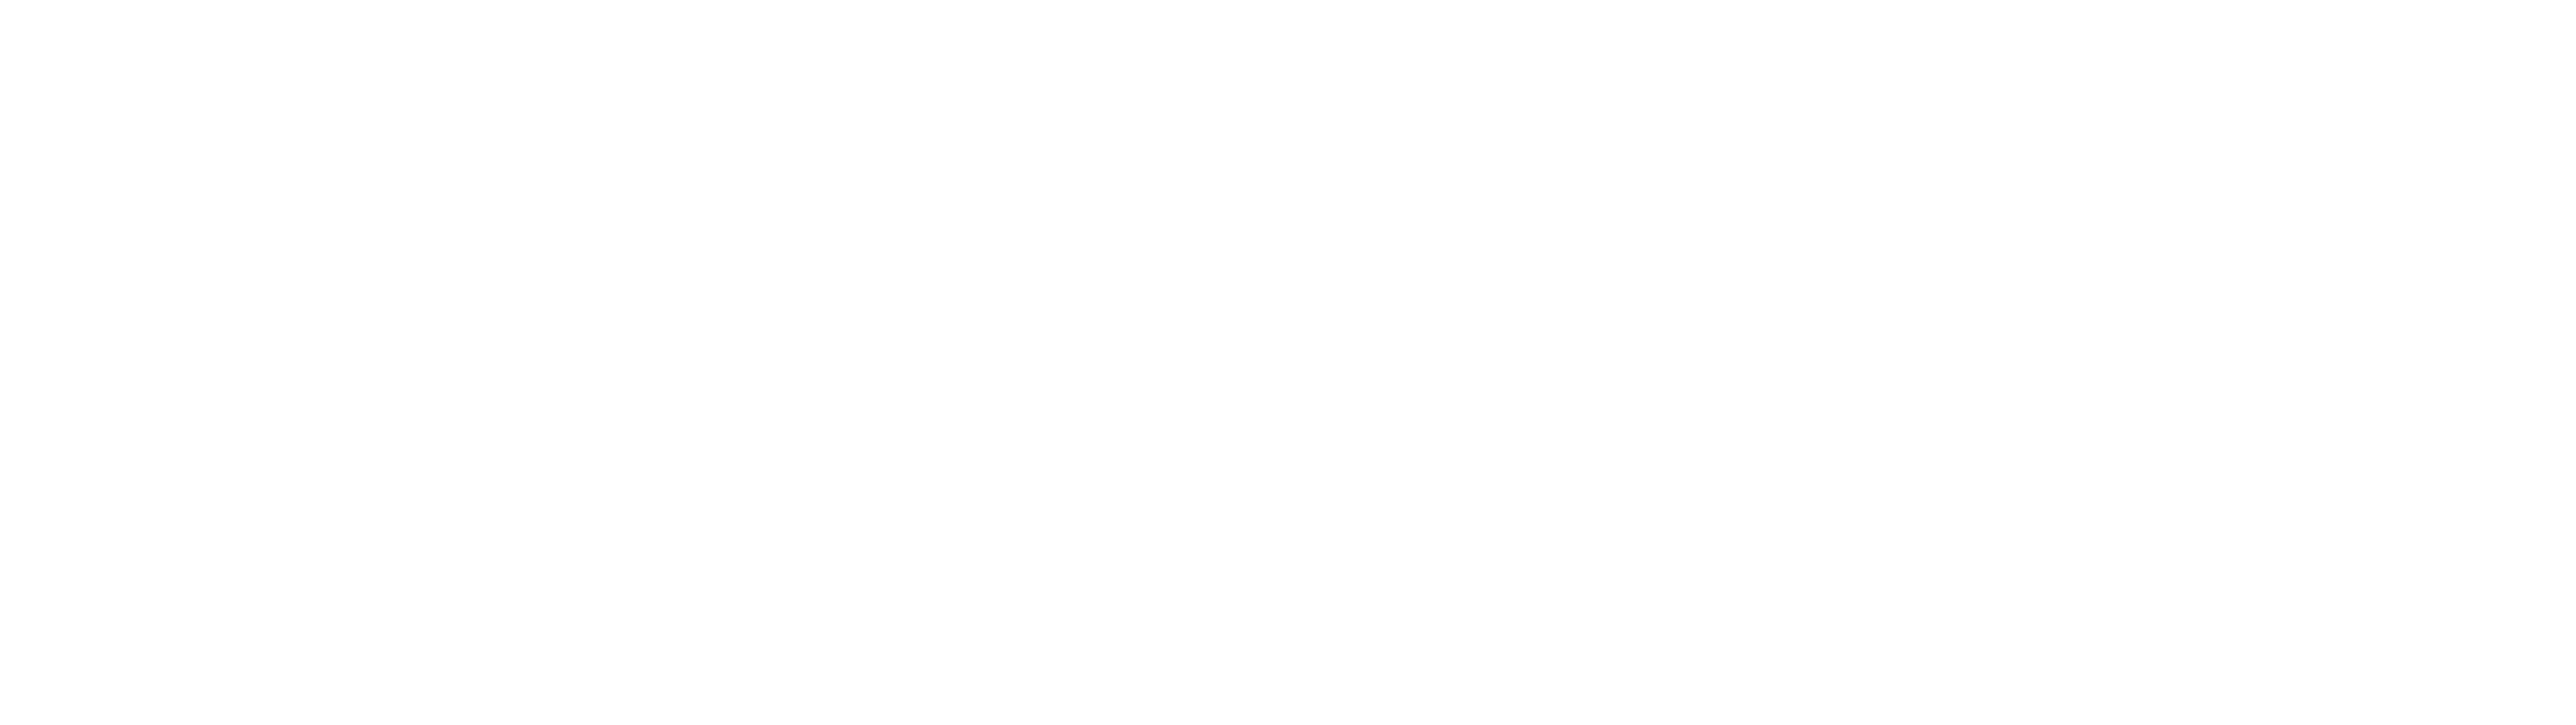 VoCoVo-White-Logo_1 (1)